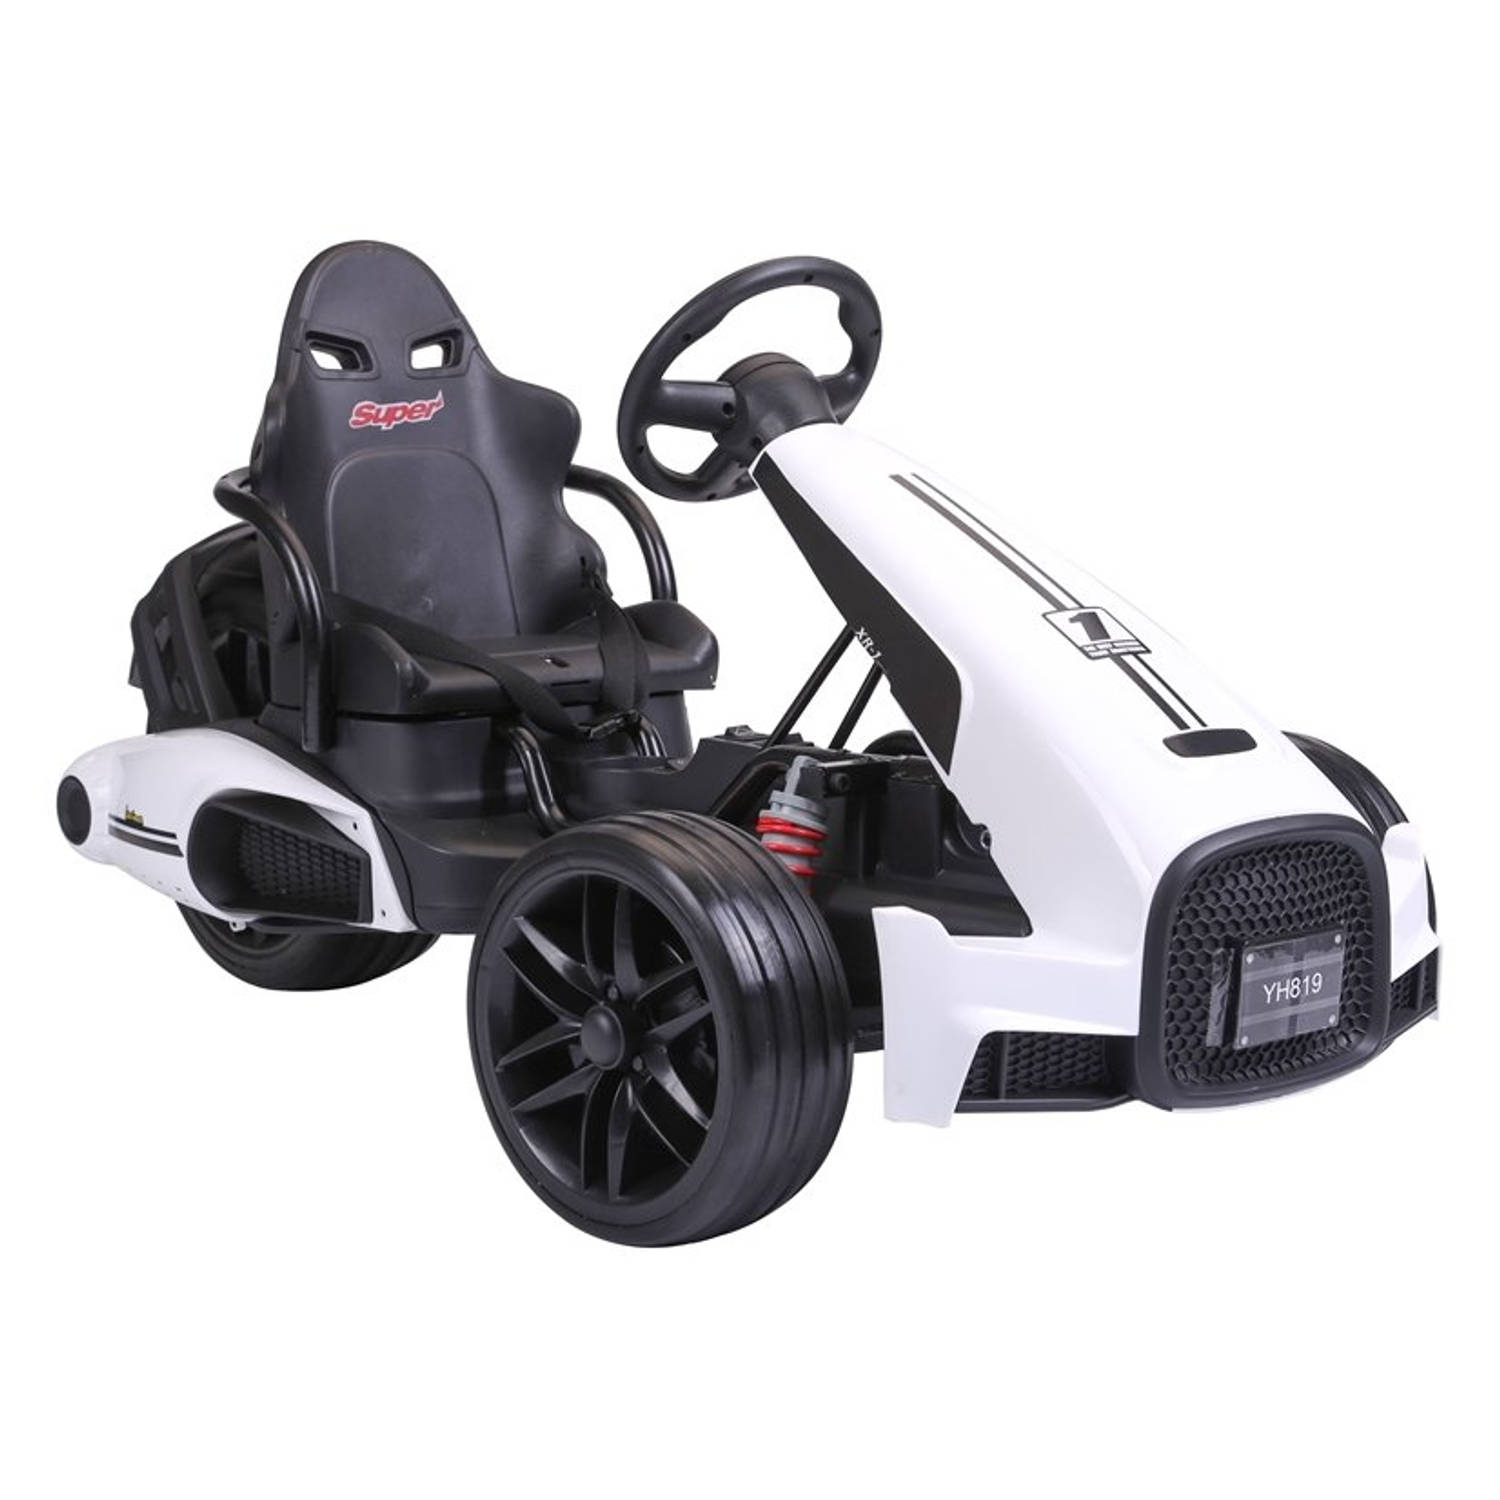 Elektrische go kart/ trike voor kinderen van 3 tot 5 jaar - Accuvoertuig go-cart tot 35kg max 3-5km/h wit - 12V 2 x 45W